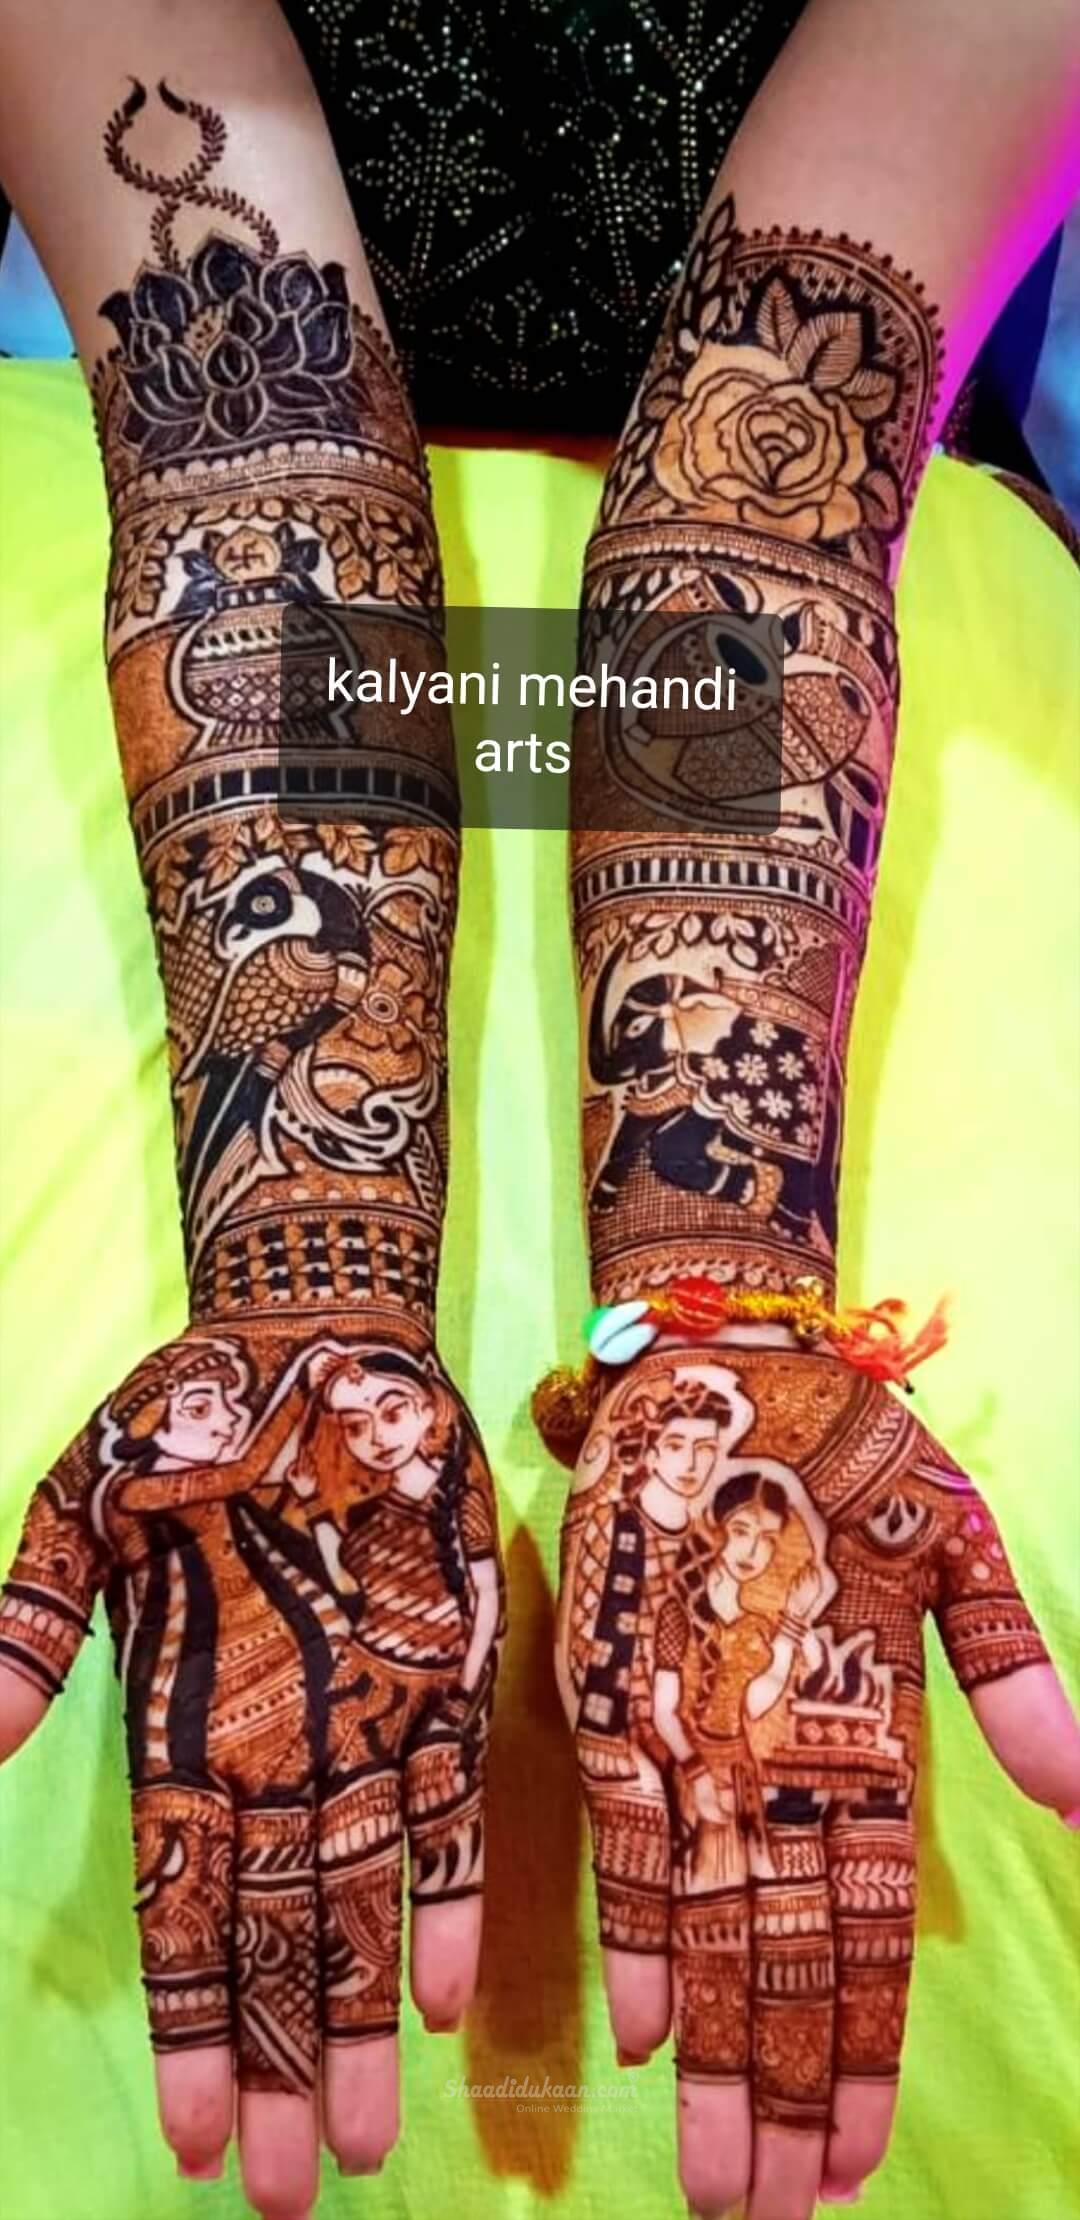 Kalyani Mehndi Arts